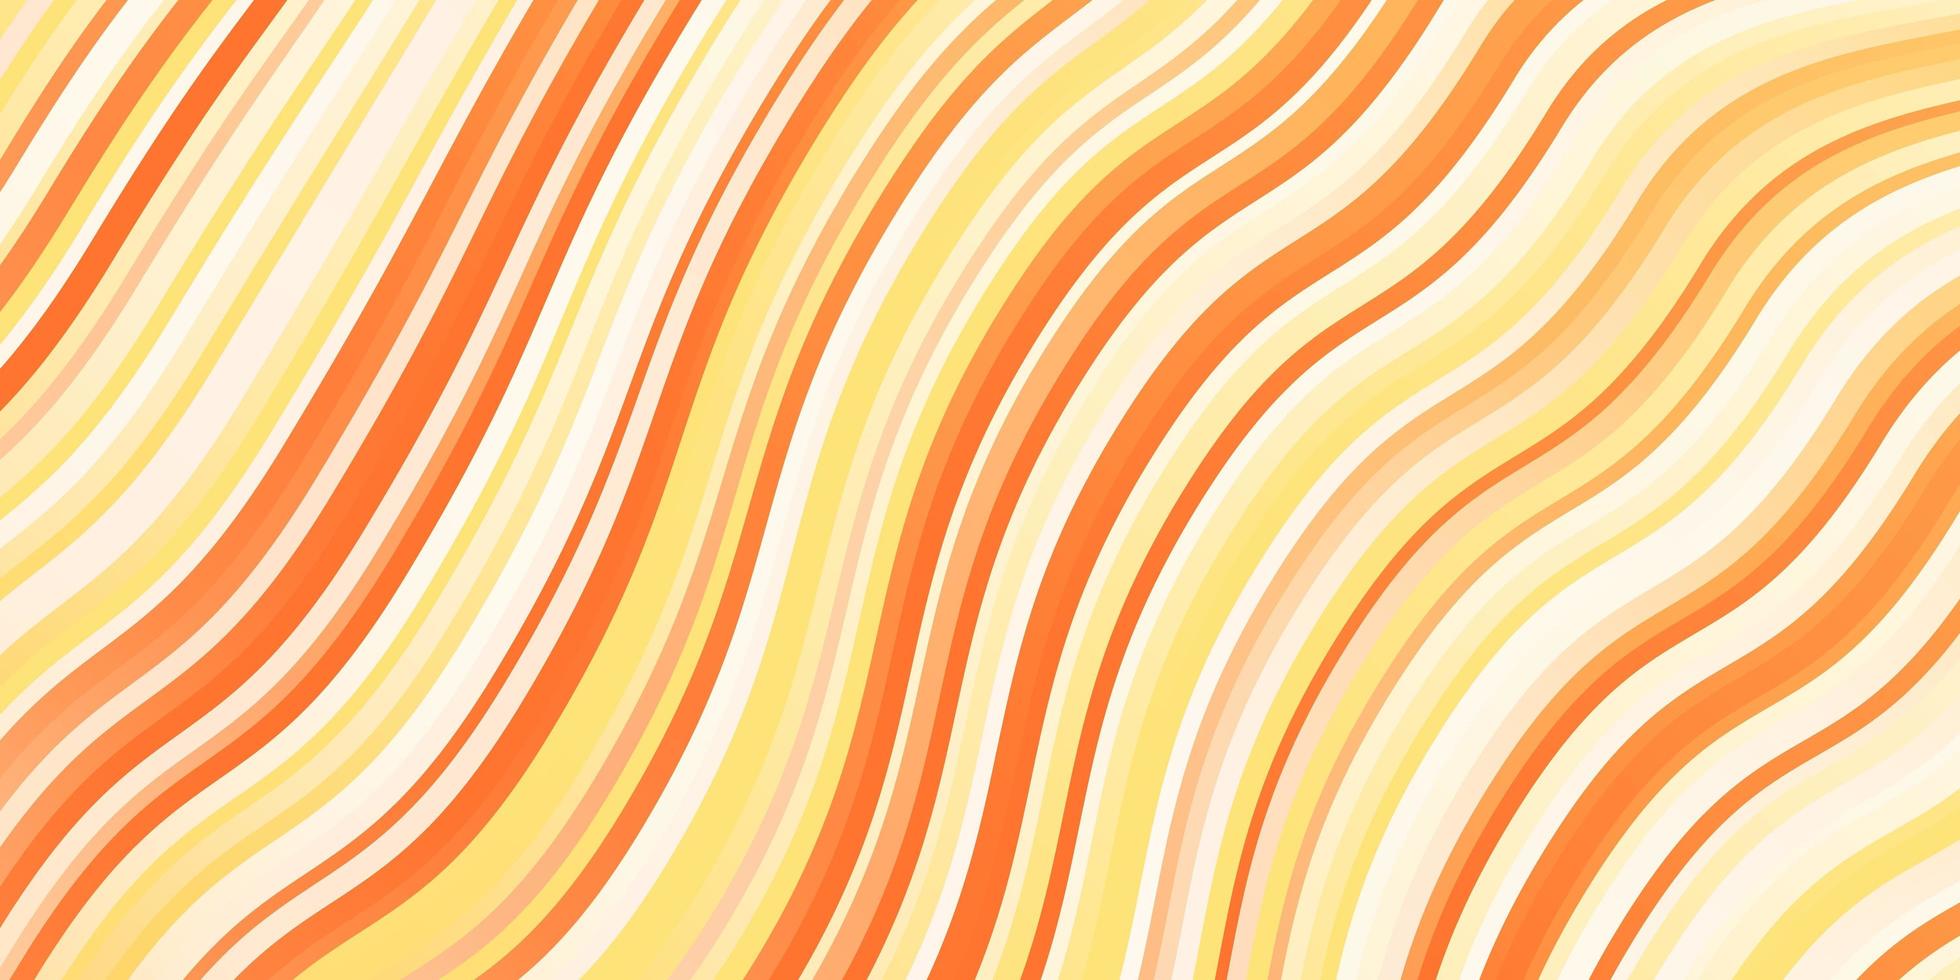 pano de fundo vector laranja claro com linhas dobradas.